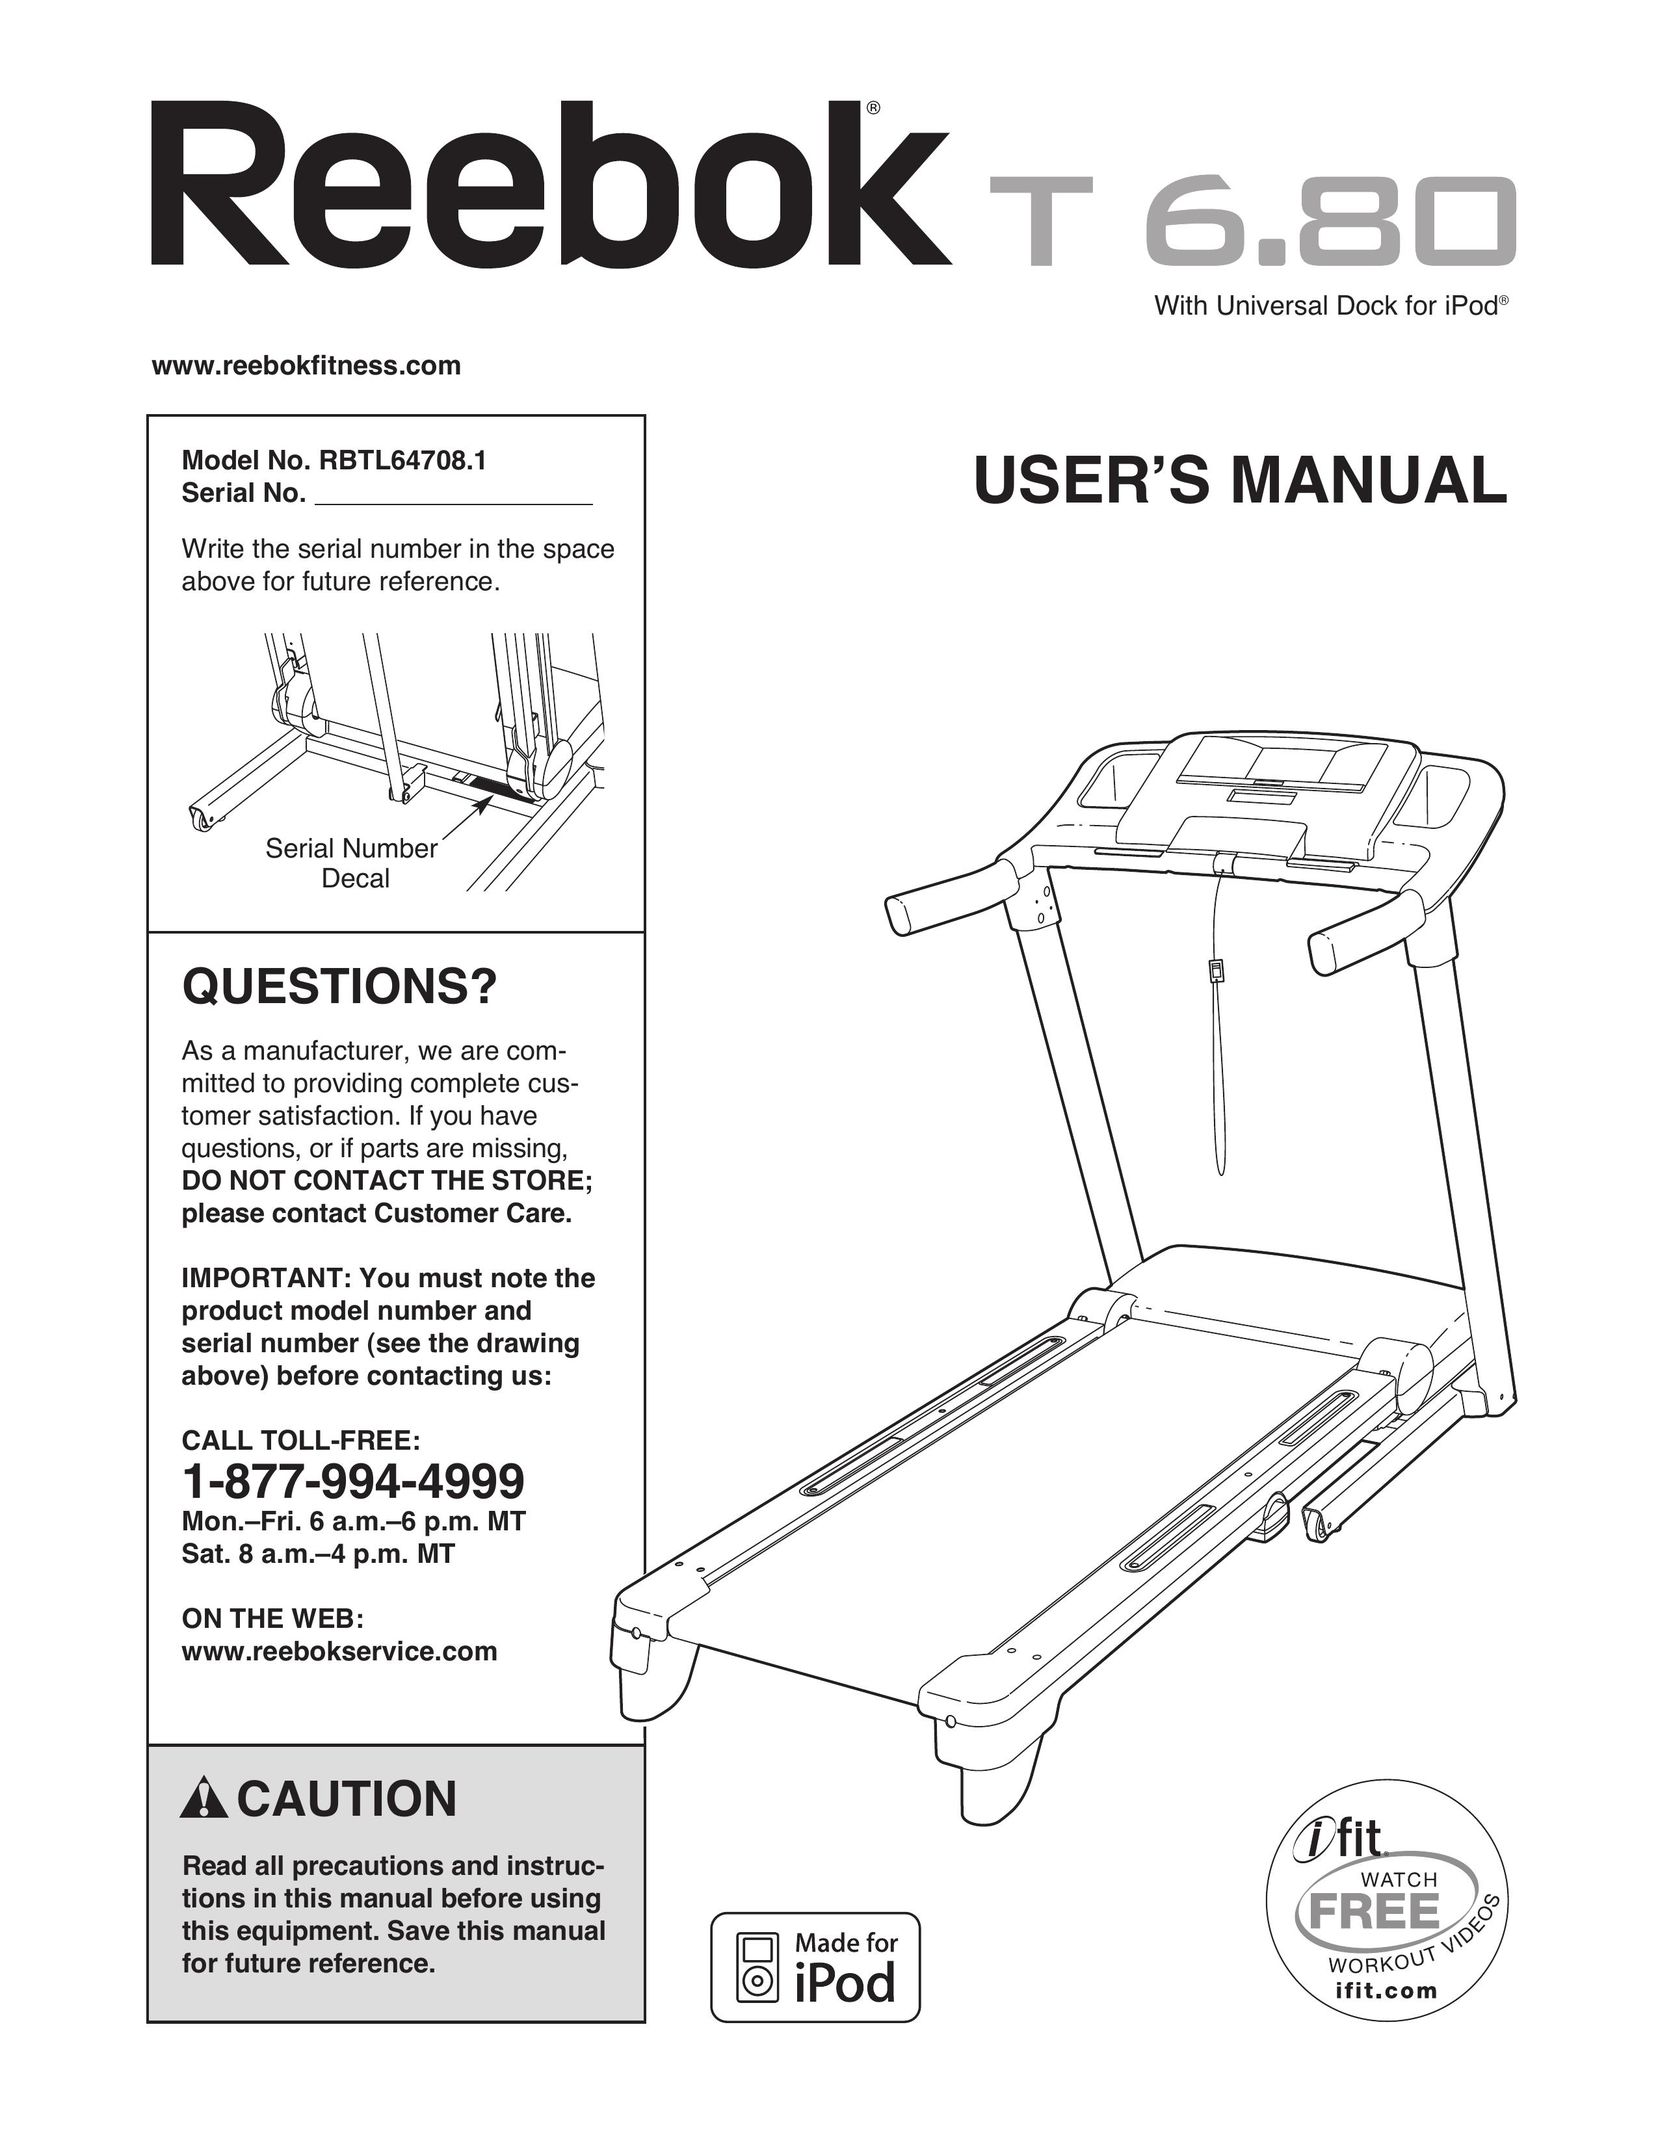 Reebok RBTL64708.1 Treadmill User Manual